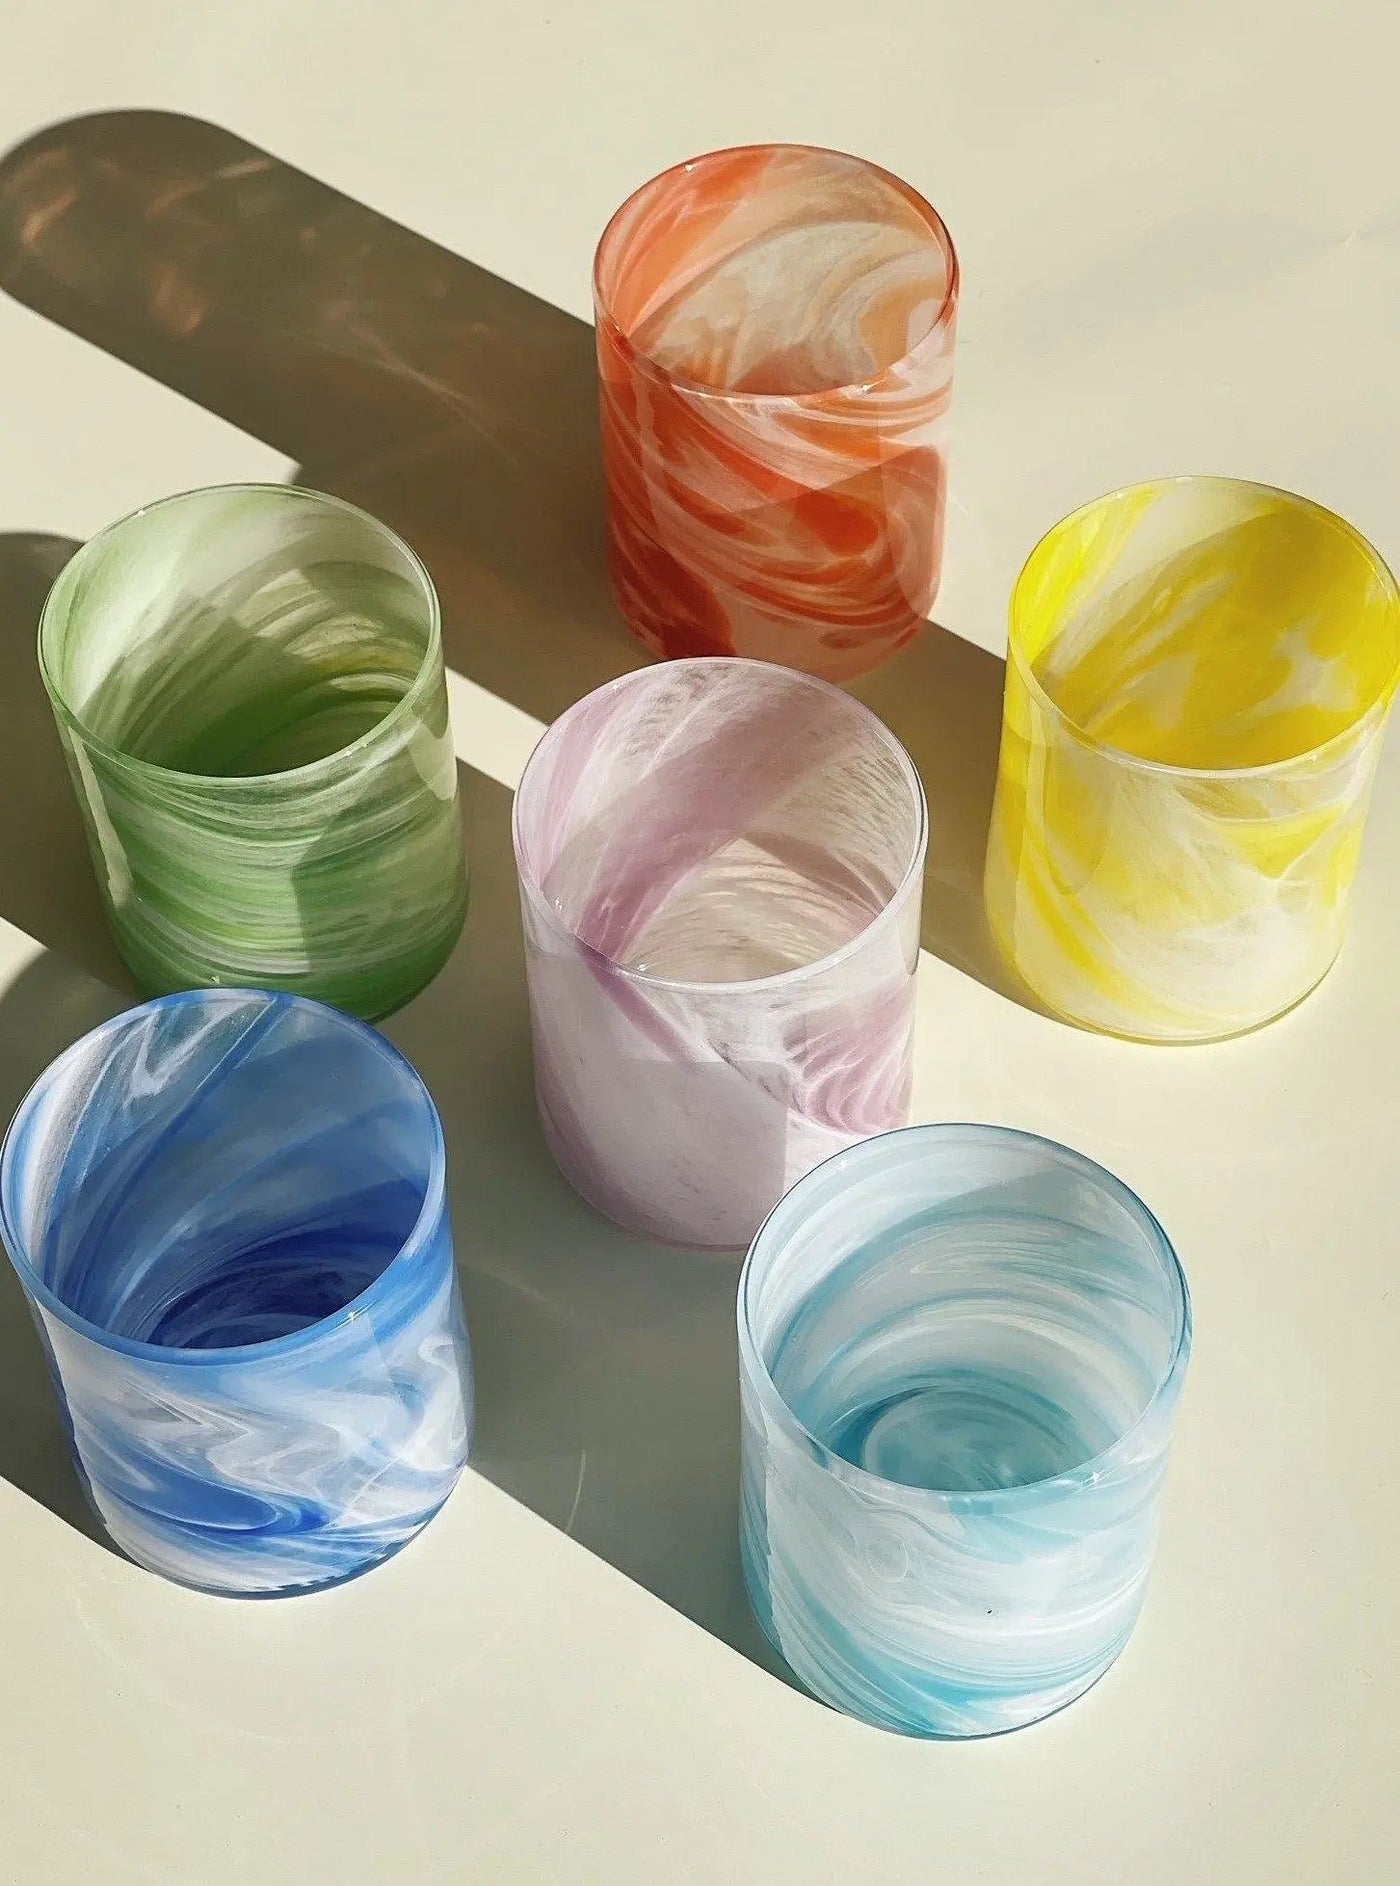 Murano Tumbler Drikkeglas | Blå, lyseblå, lilla, gul, rød og grøn Murano